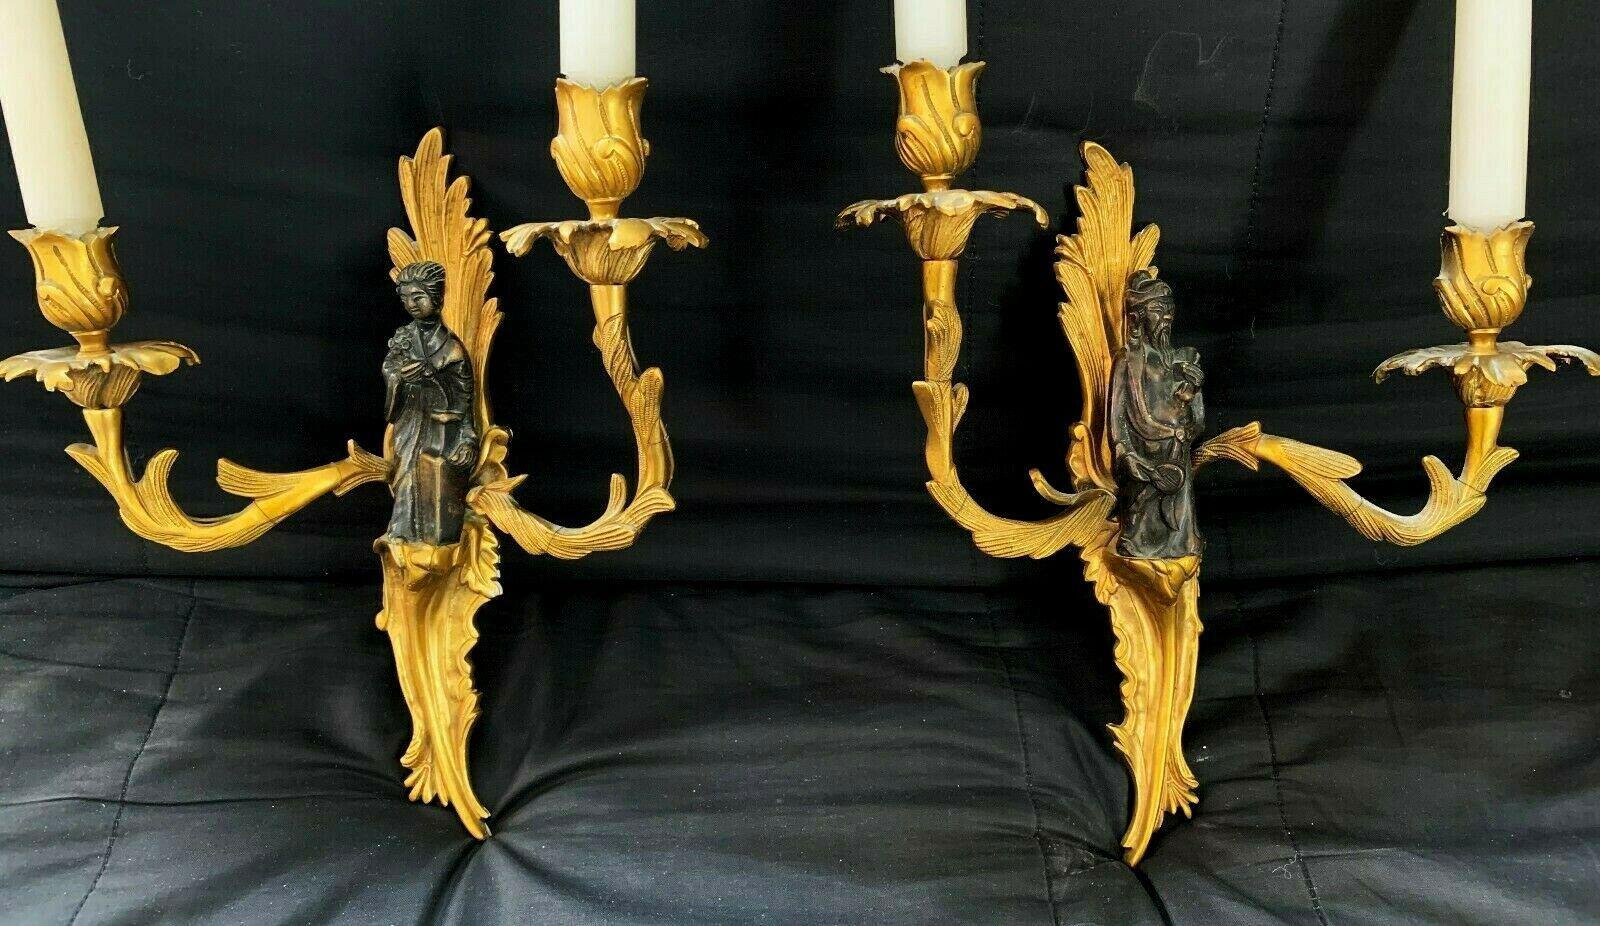 Paire d'appliques murales figuratives en bronze patiné et doré. Style Louis XV Rococo. Je les ai trouvés lors d'un voyage d'achat à Paris. Fausses bougies avec douille de lumière au sommet. Très élégant.